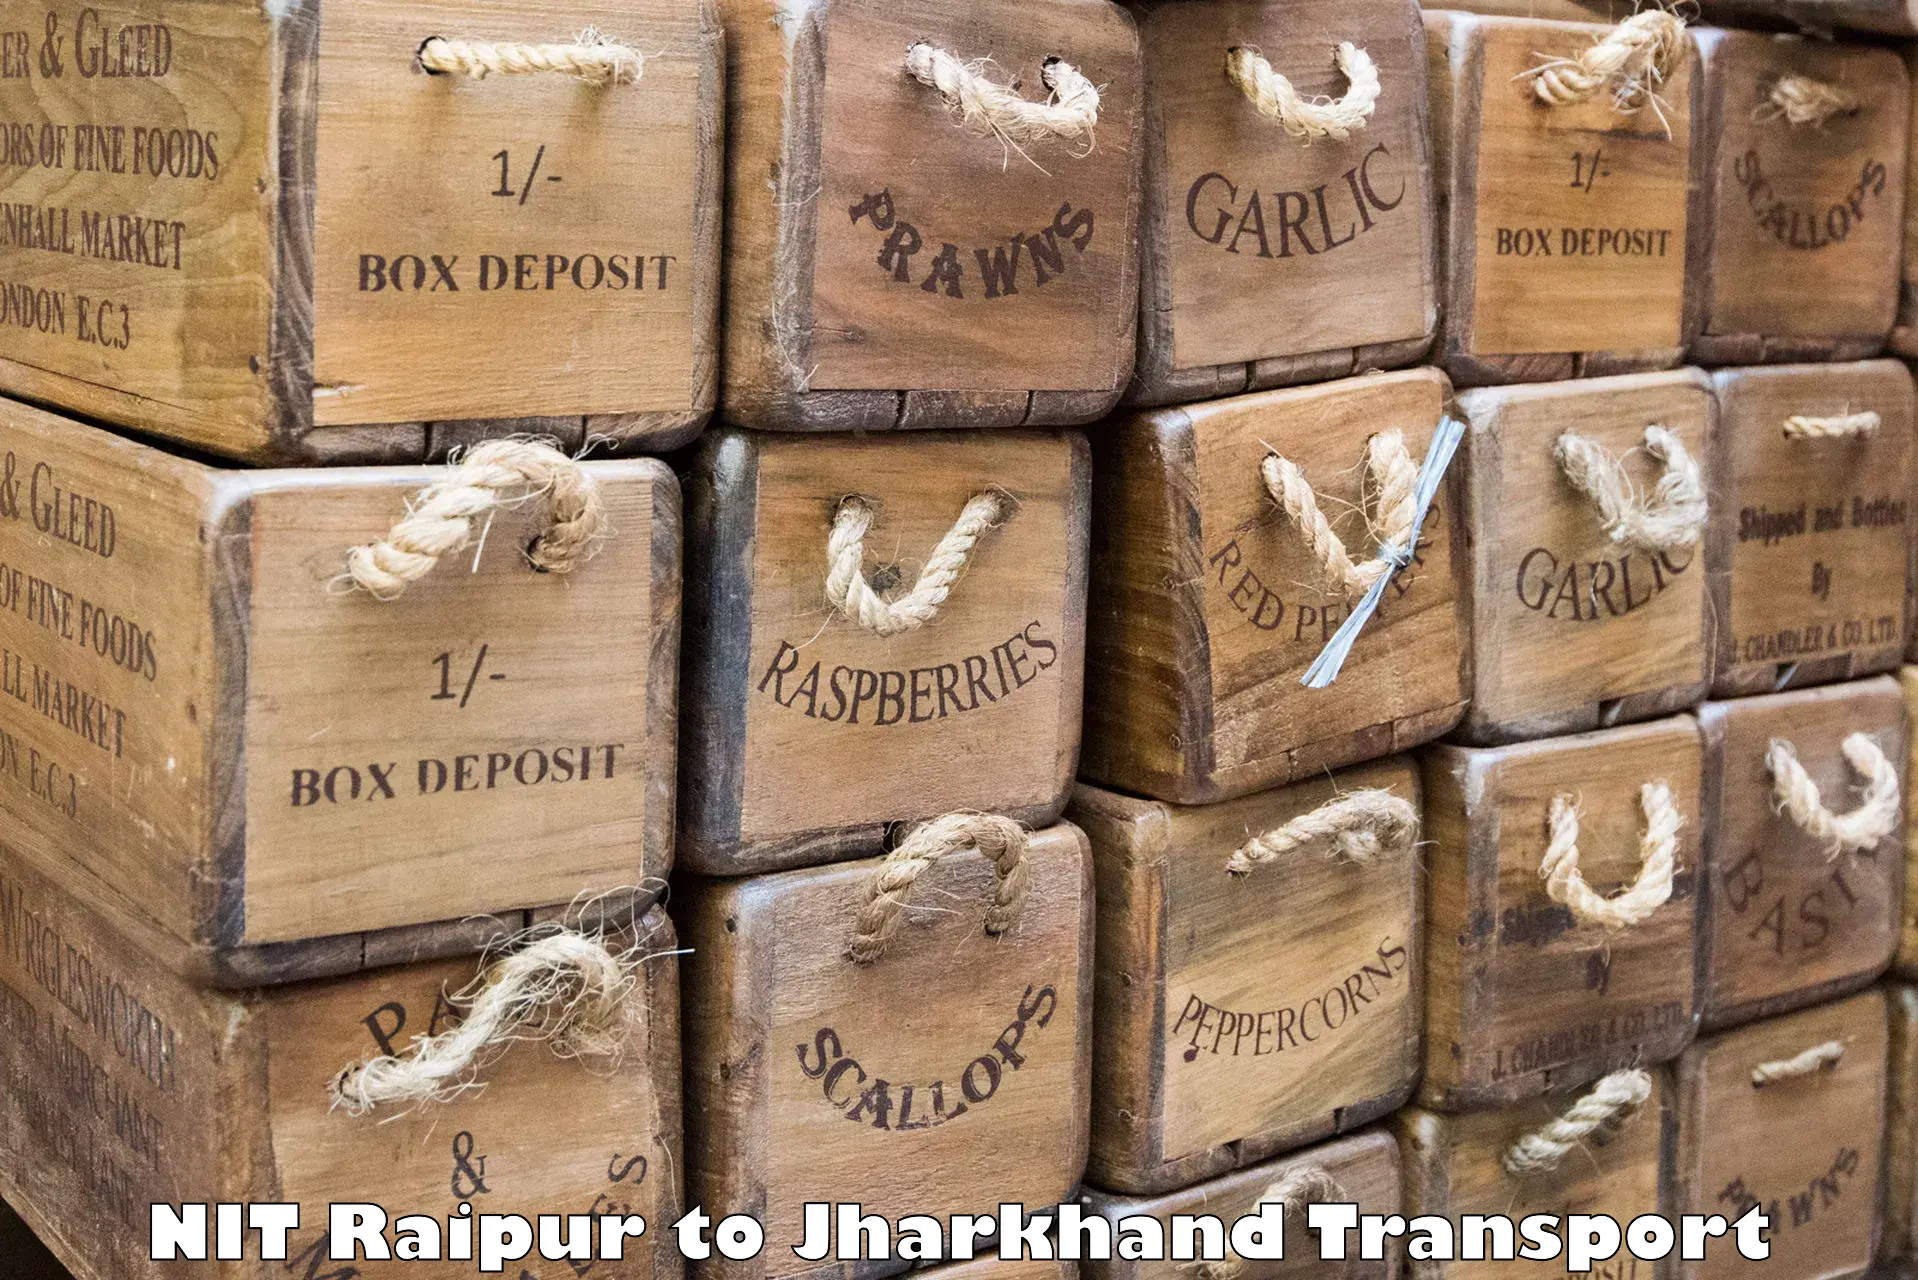 Container transport service NIT Raipur to Govindpur